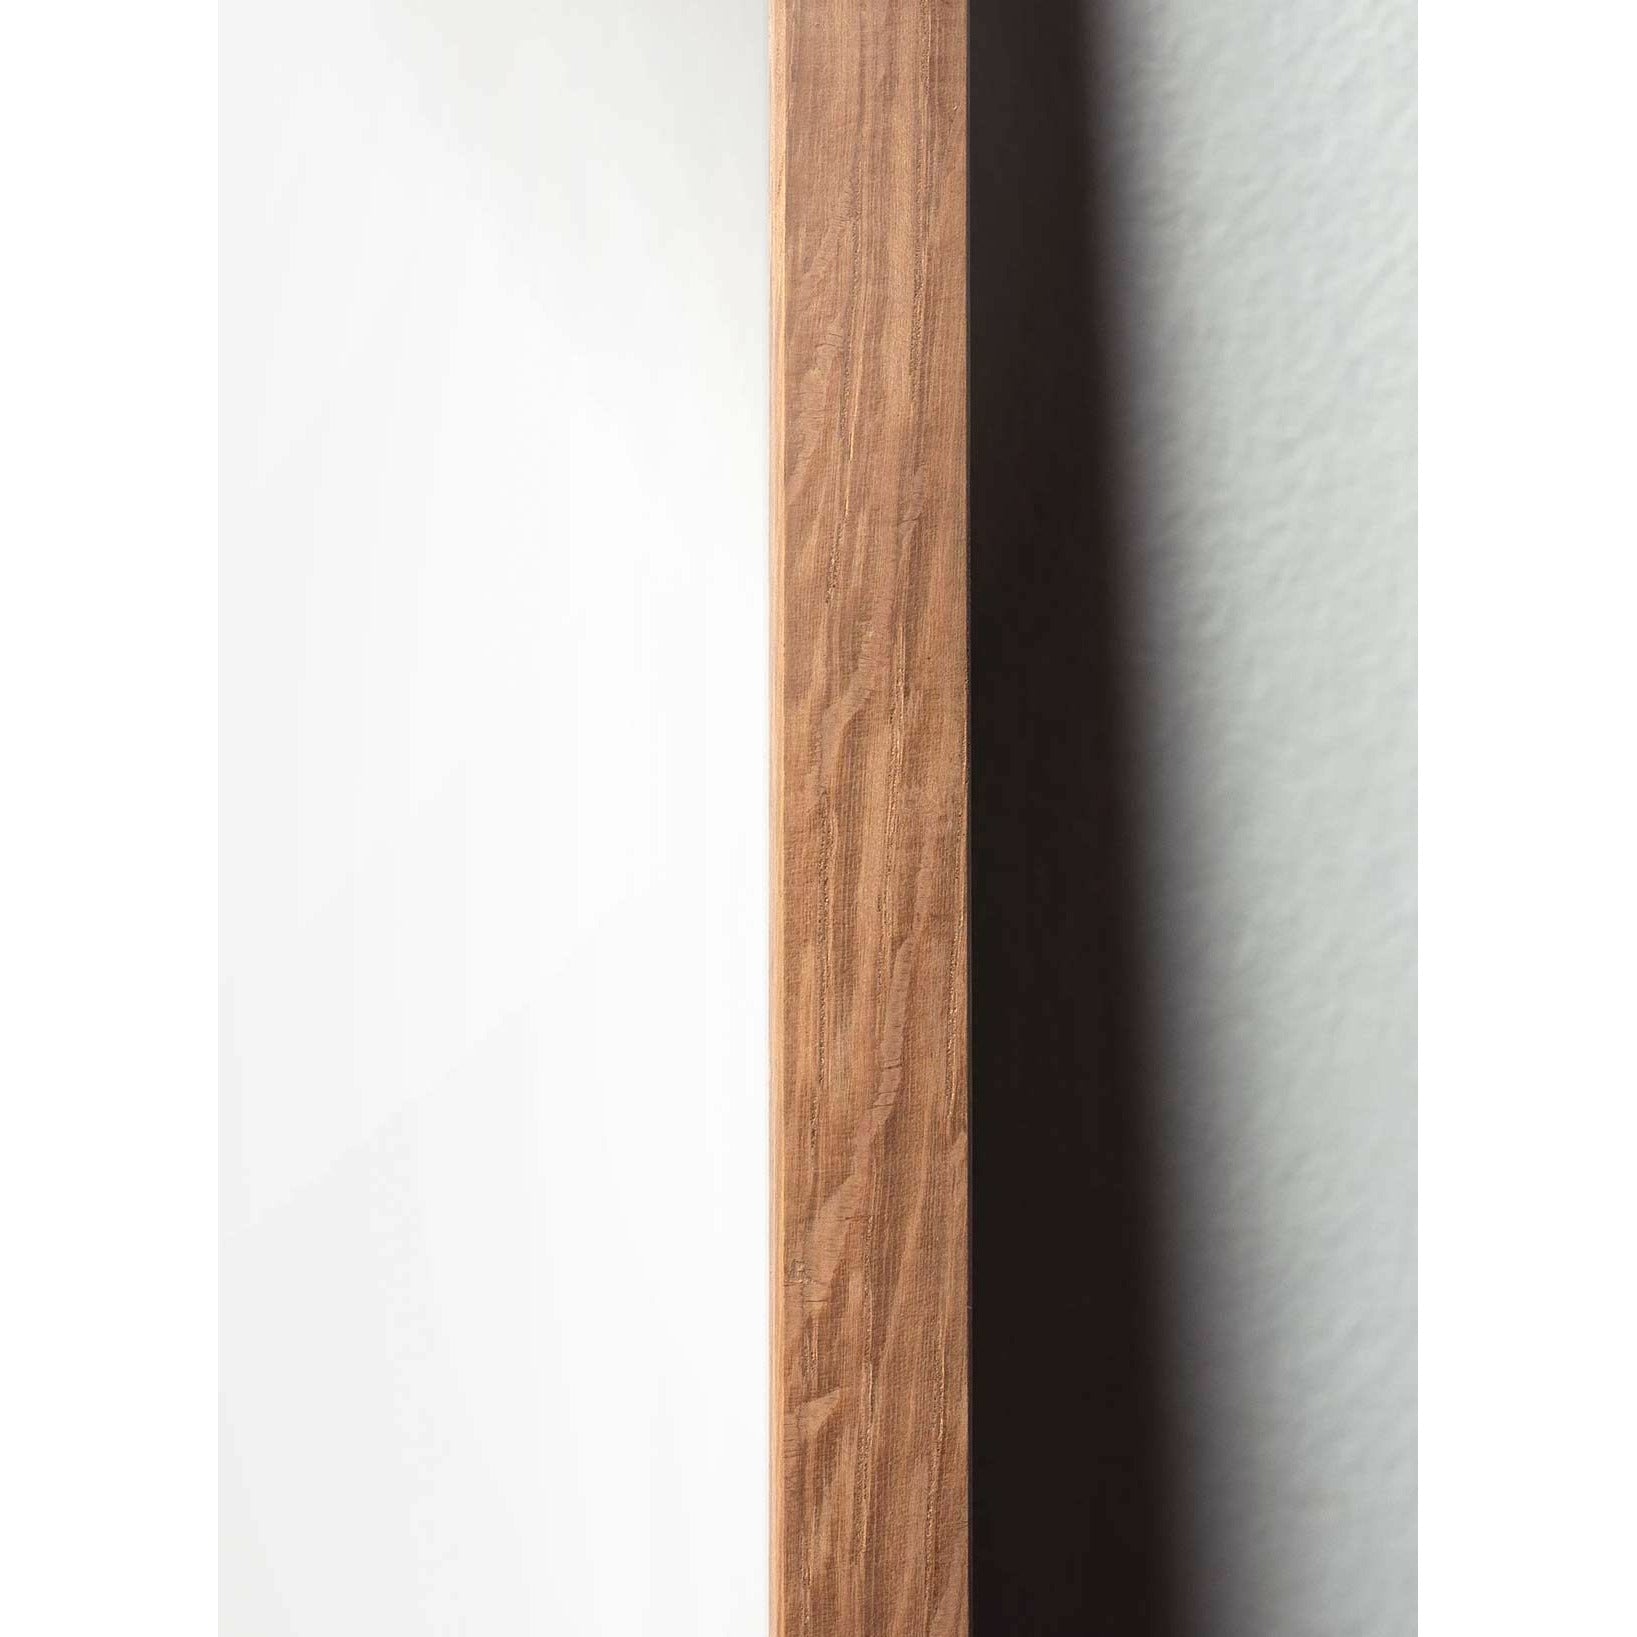 Póster de línea de cono de pino de creación, marco hecho de madera clara A5, fondo blanco